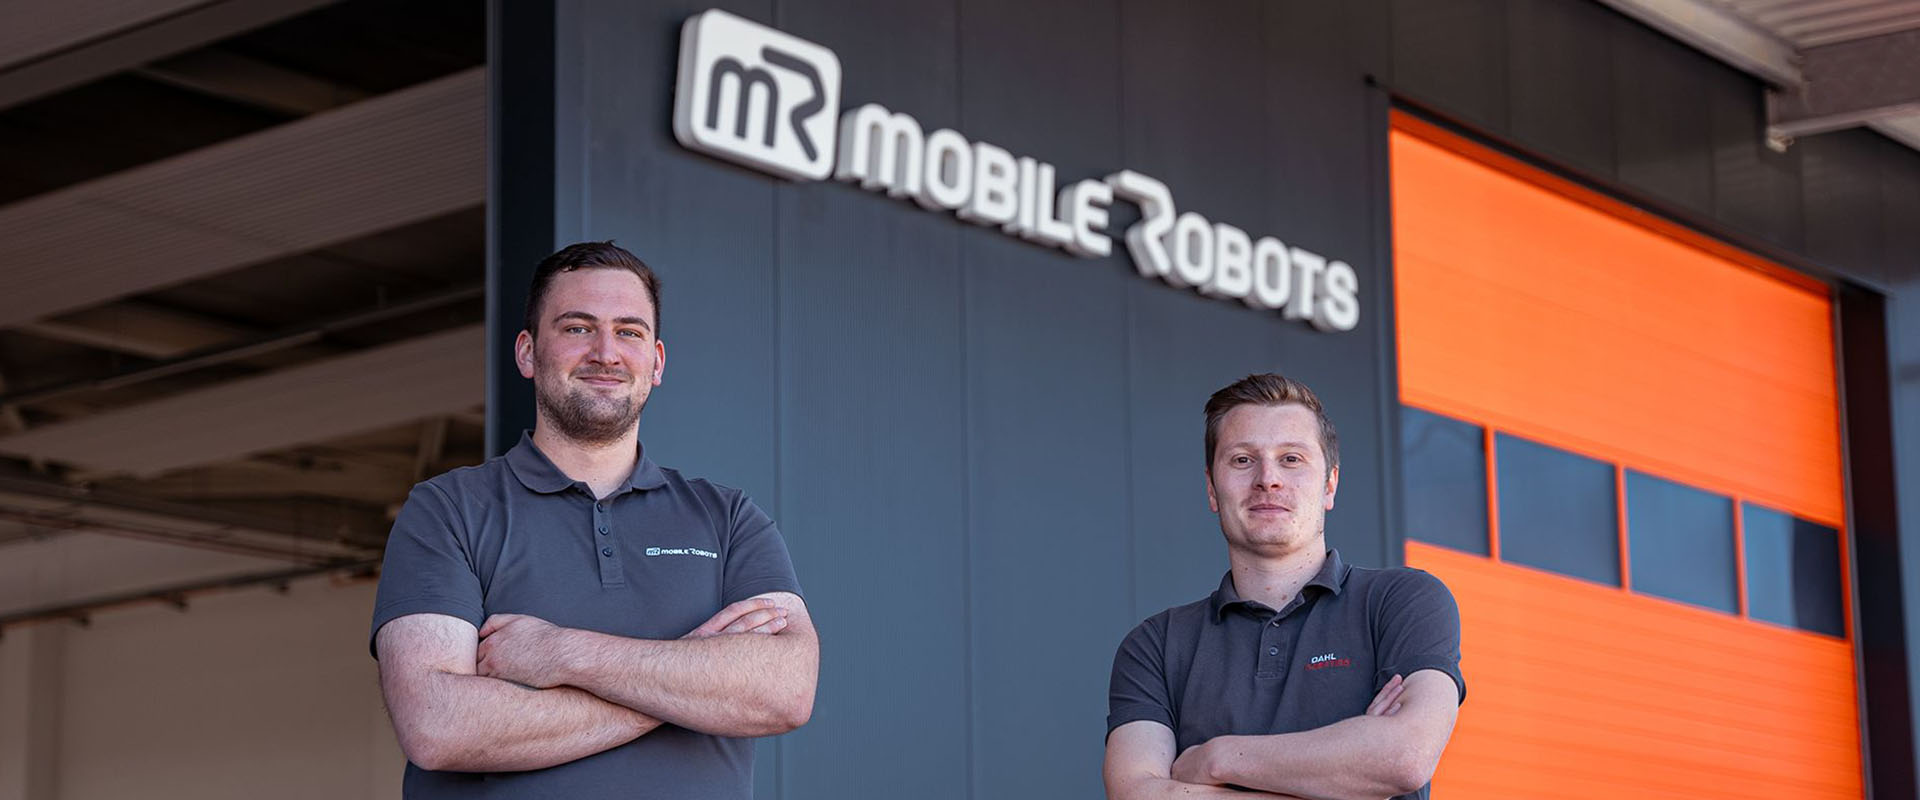 Automatisieren auch Sie Ihre Produktion mit Cobots und Automationstechnik des Teams von mR MOBILE ROBOTS / DAHL Robotics in Meinerzhagen / Südwestfalen.